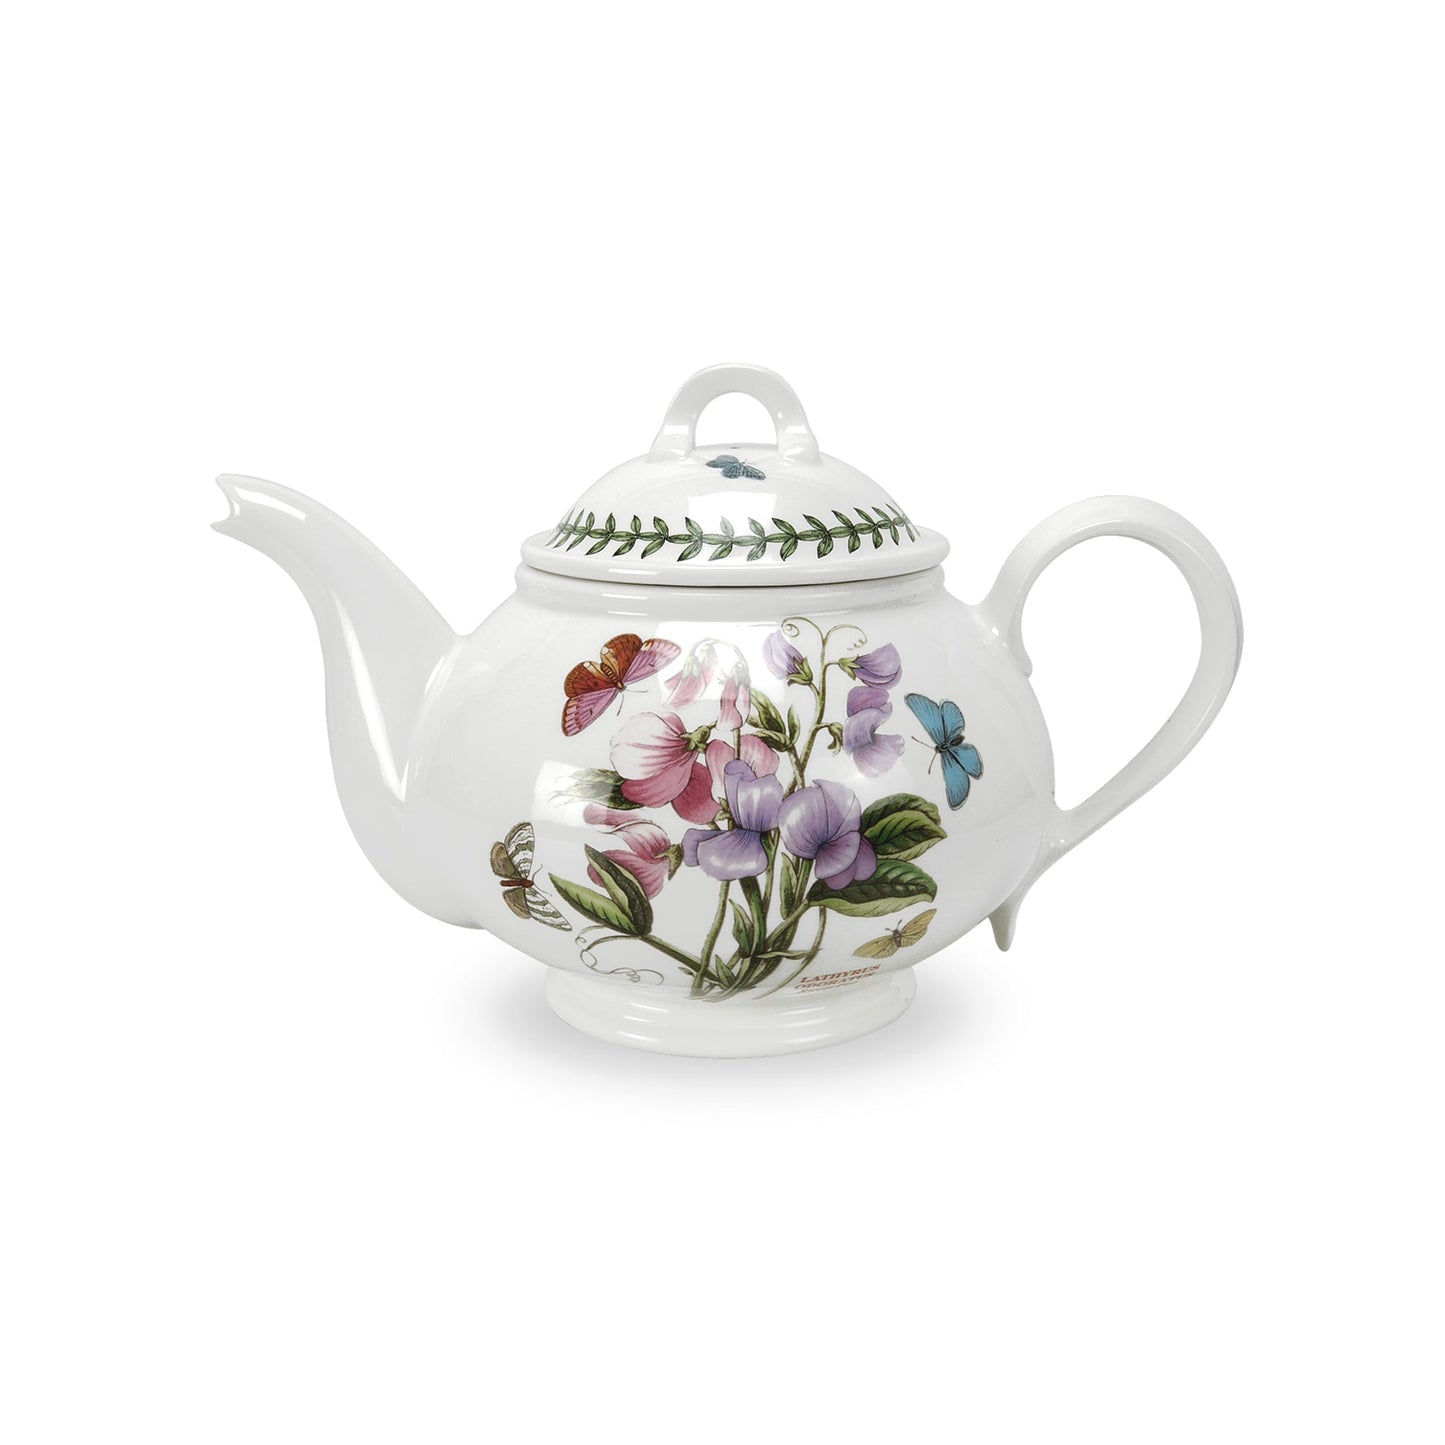 Portmeirion Botanic Garden Teapot - Shoppedeals